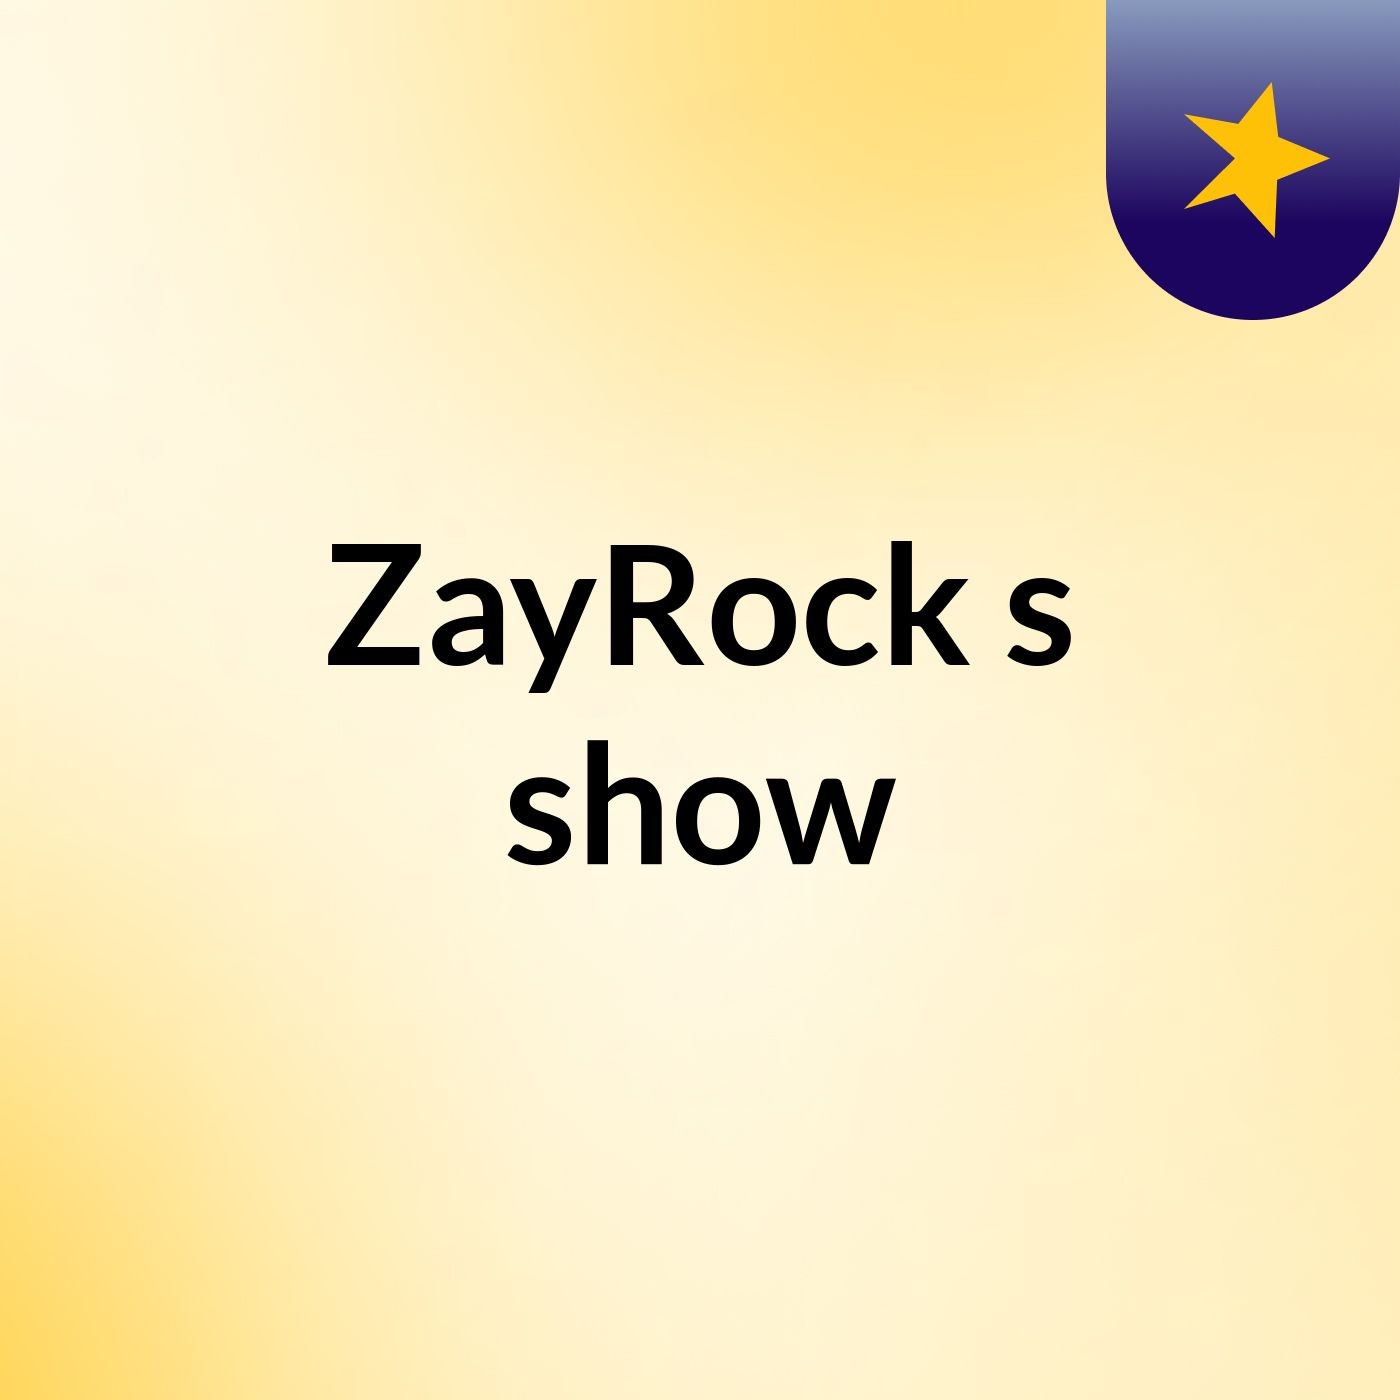 ZayRock's show